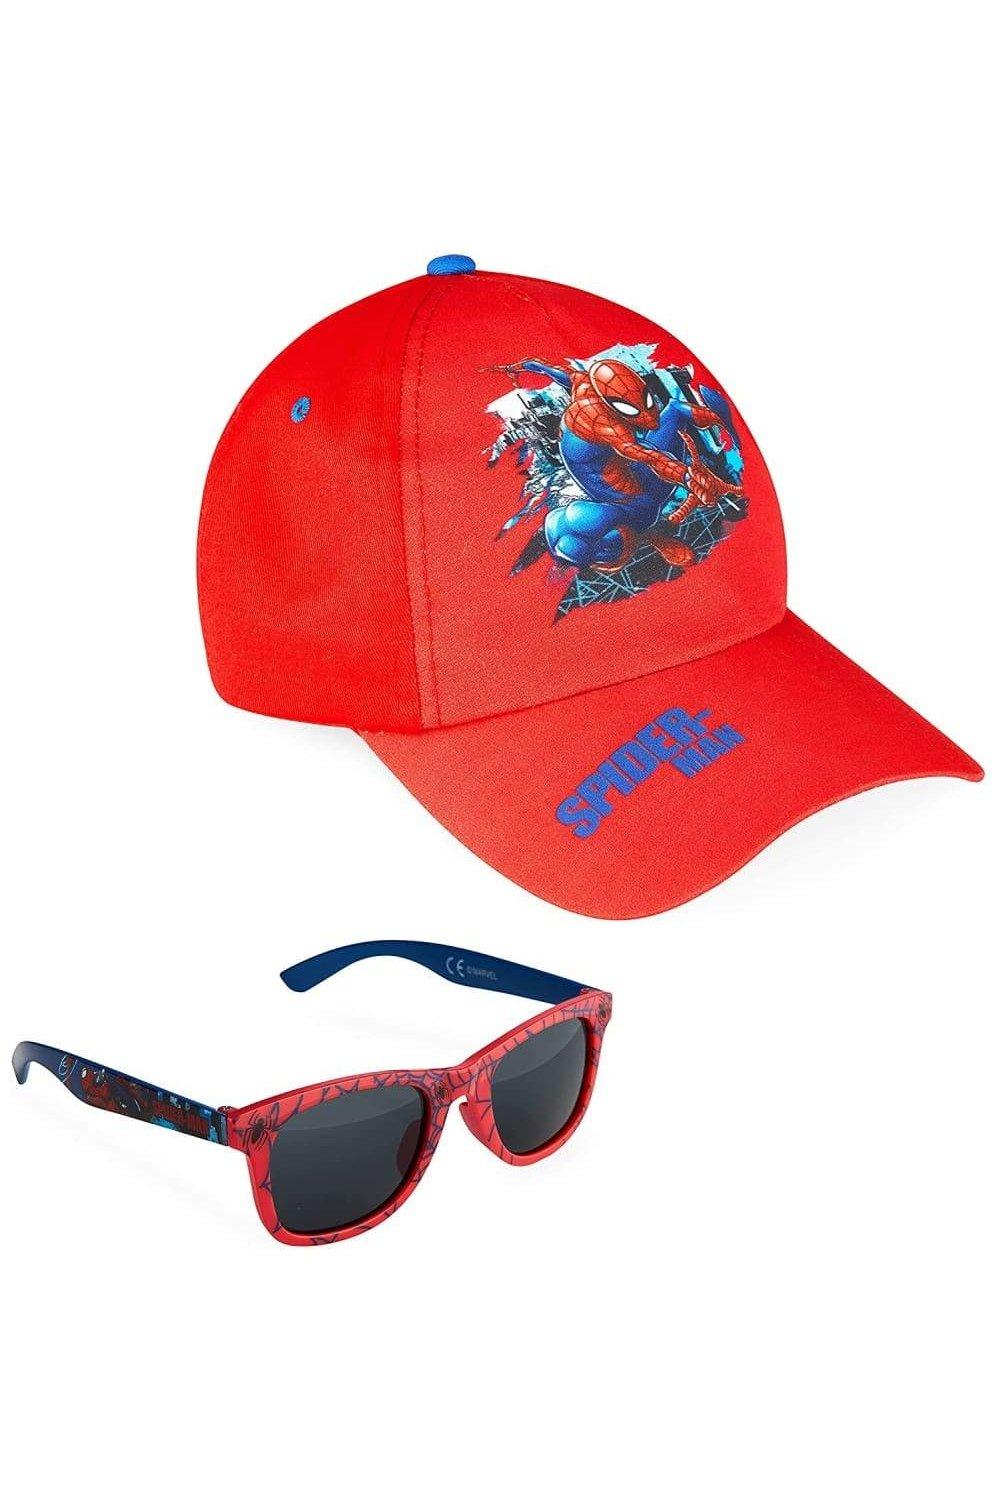 детские солнцезащитные очки диснеевская принцесса жасмин Человек-паук в красной кепке и солнцезащитных очках Marvel, красный